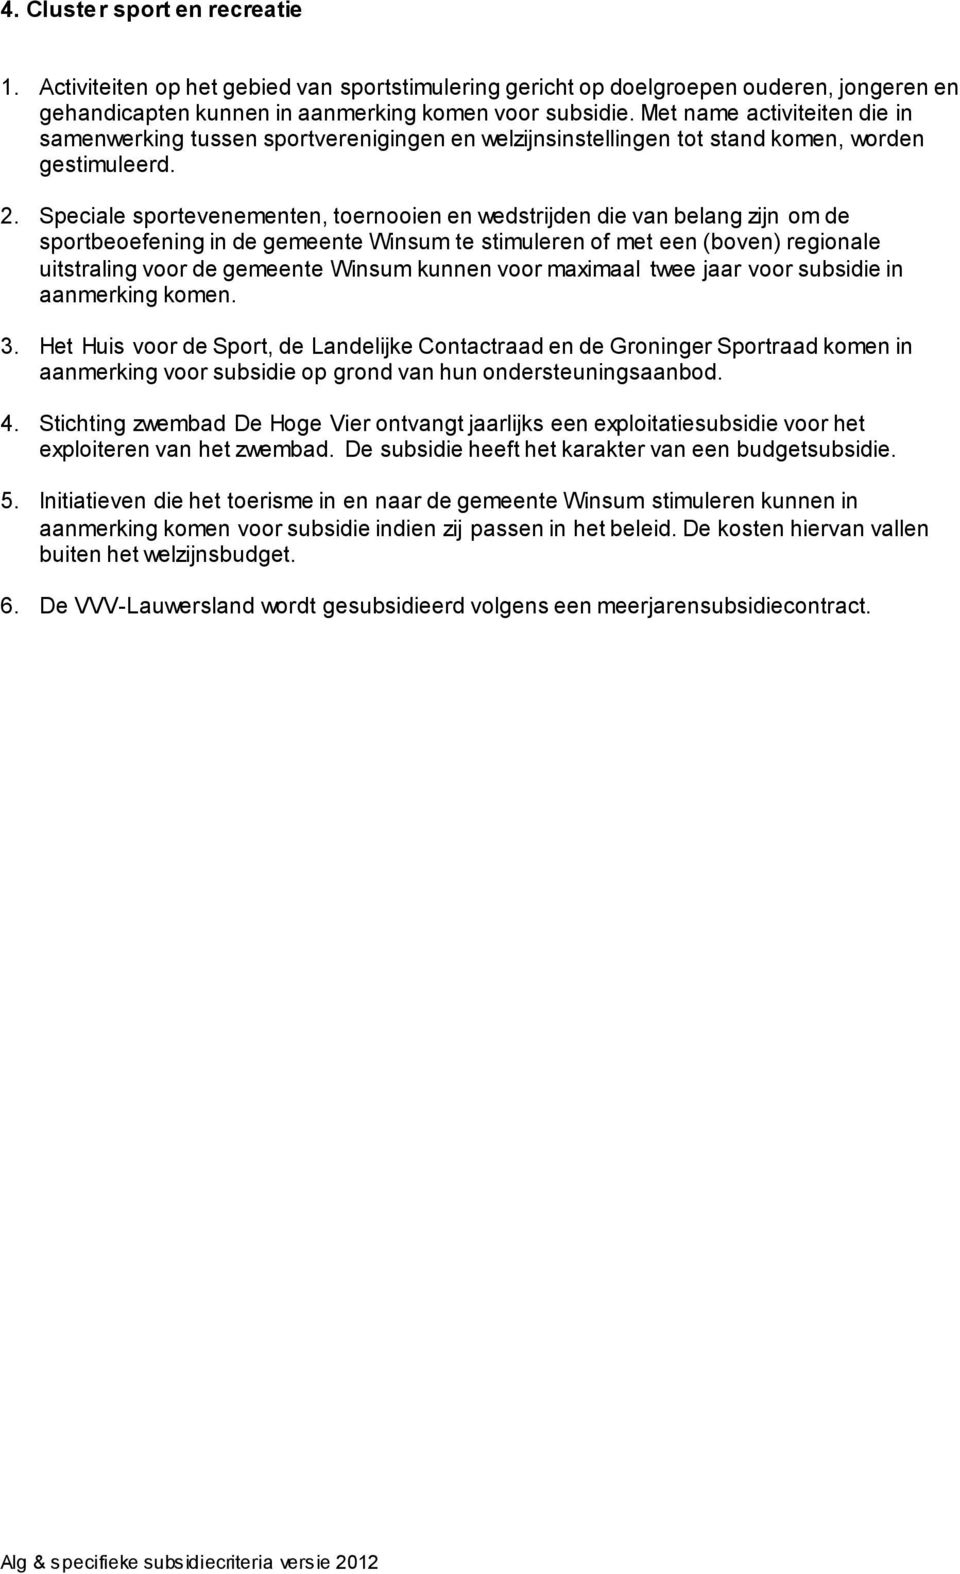 Speciale sportevenementen, toernooien en wedstrijden die van belang zijn om de sportbeoefening in de gemeente Winsum te stimuleren of met een (boven) regionale uitstraling voor de gemeente Winsum